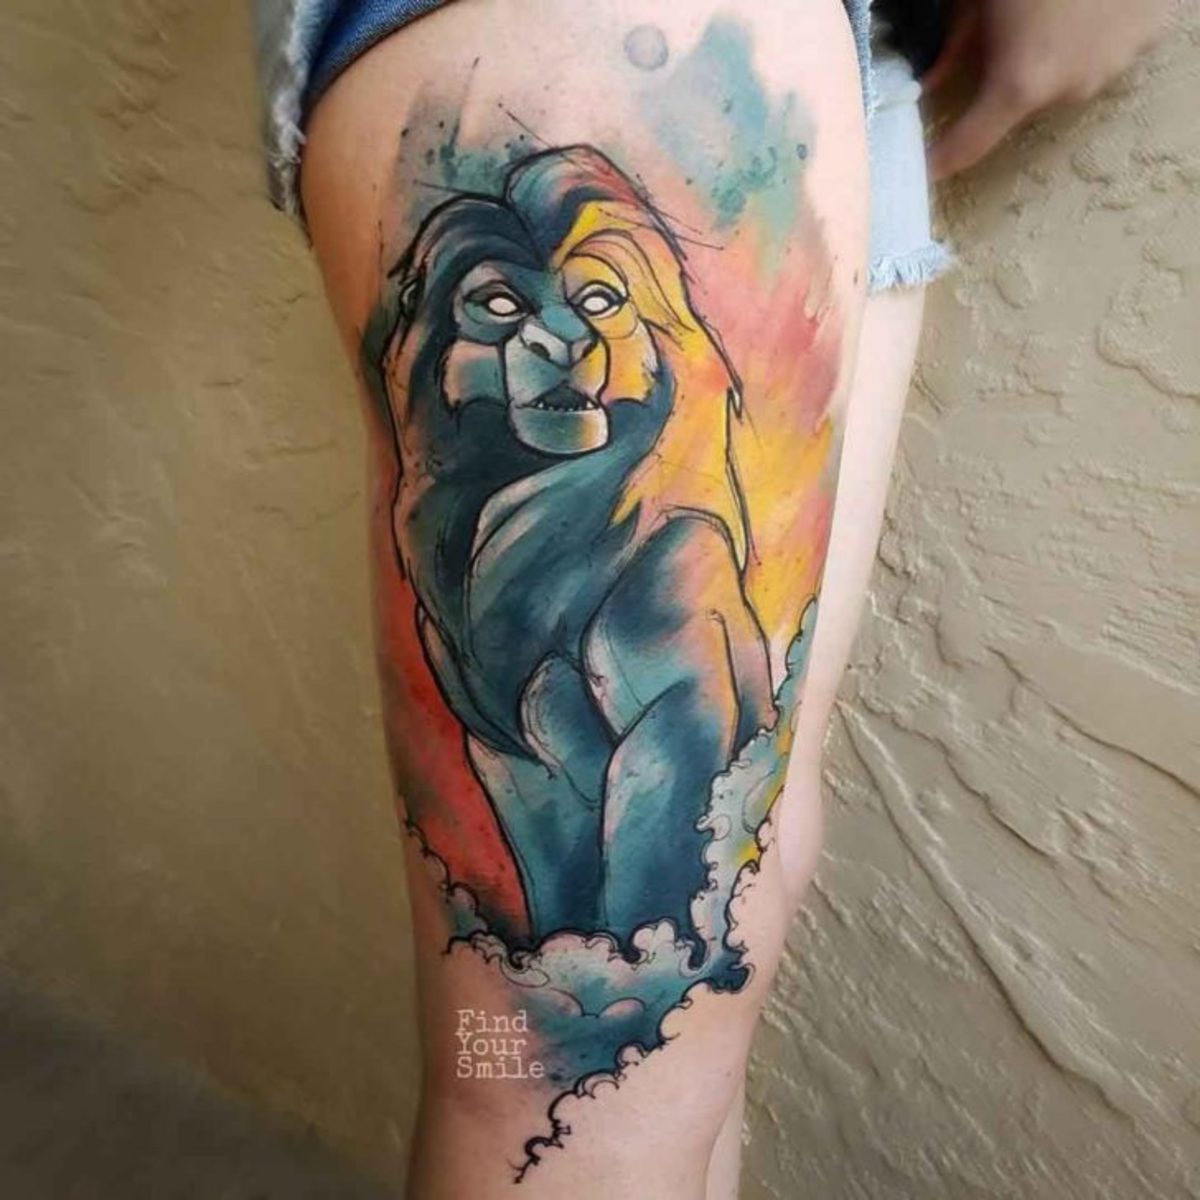 Mufasa-Lion-King-Tattoo-by-Russell-Van-Schaick-728x728